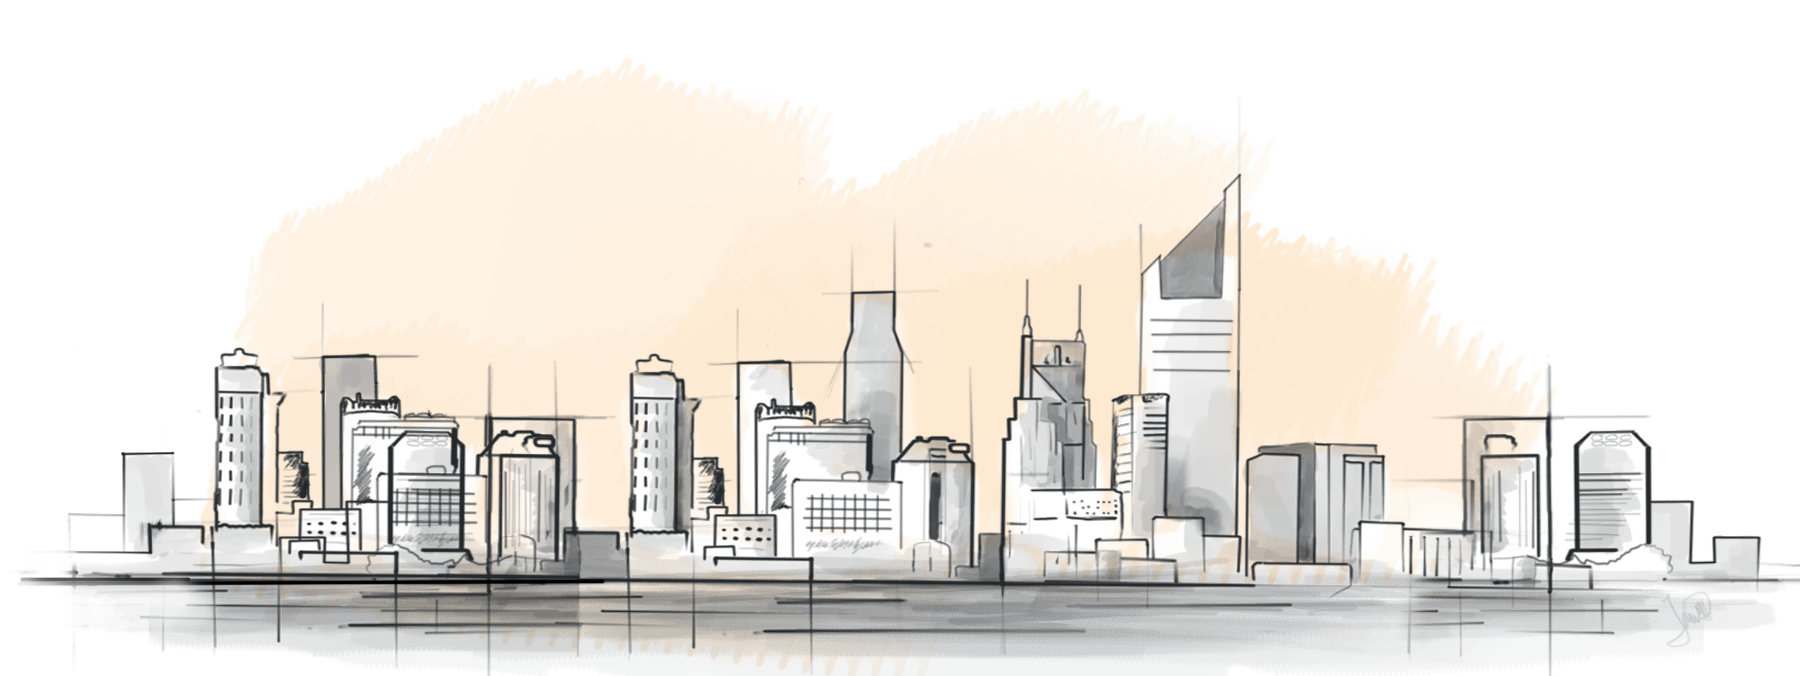 CPK - Panorama grada crtež